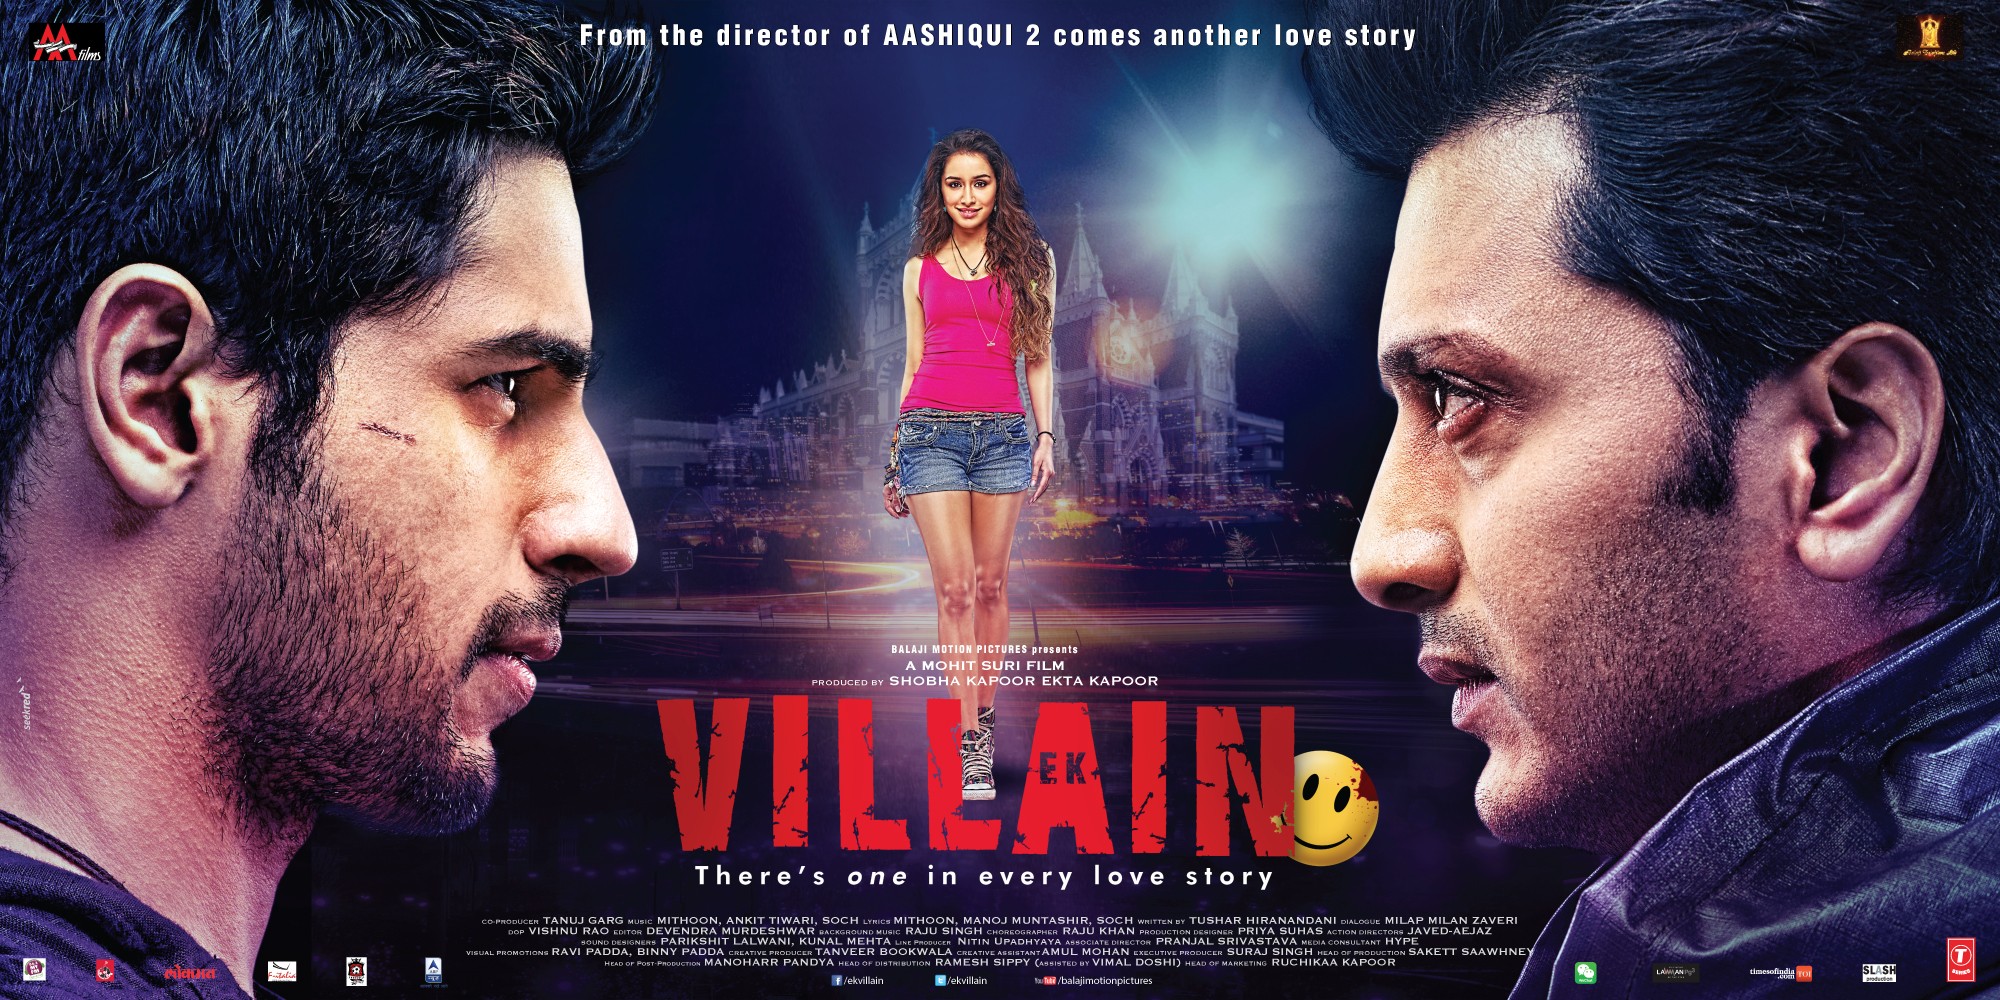 Mega Sized Movie Poster Image for Ek Villain (#4 of 4)